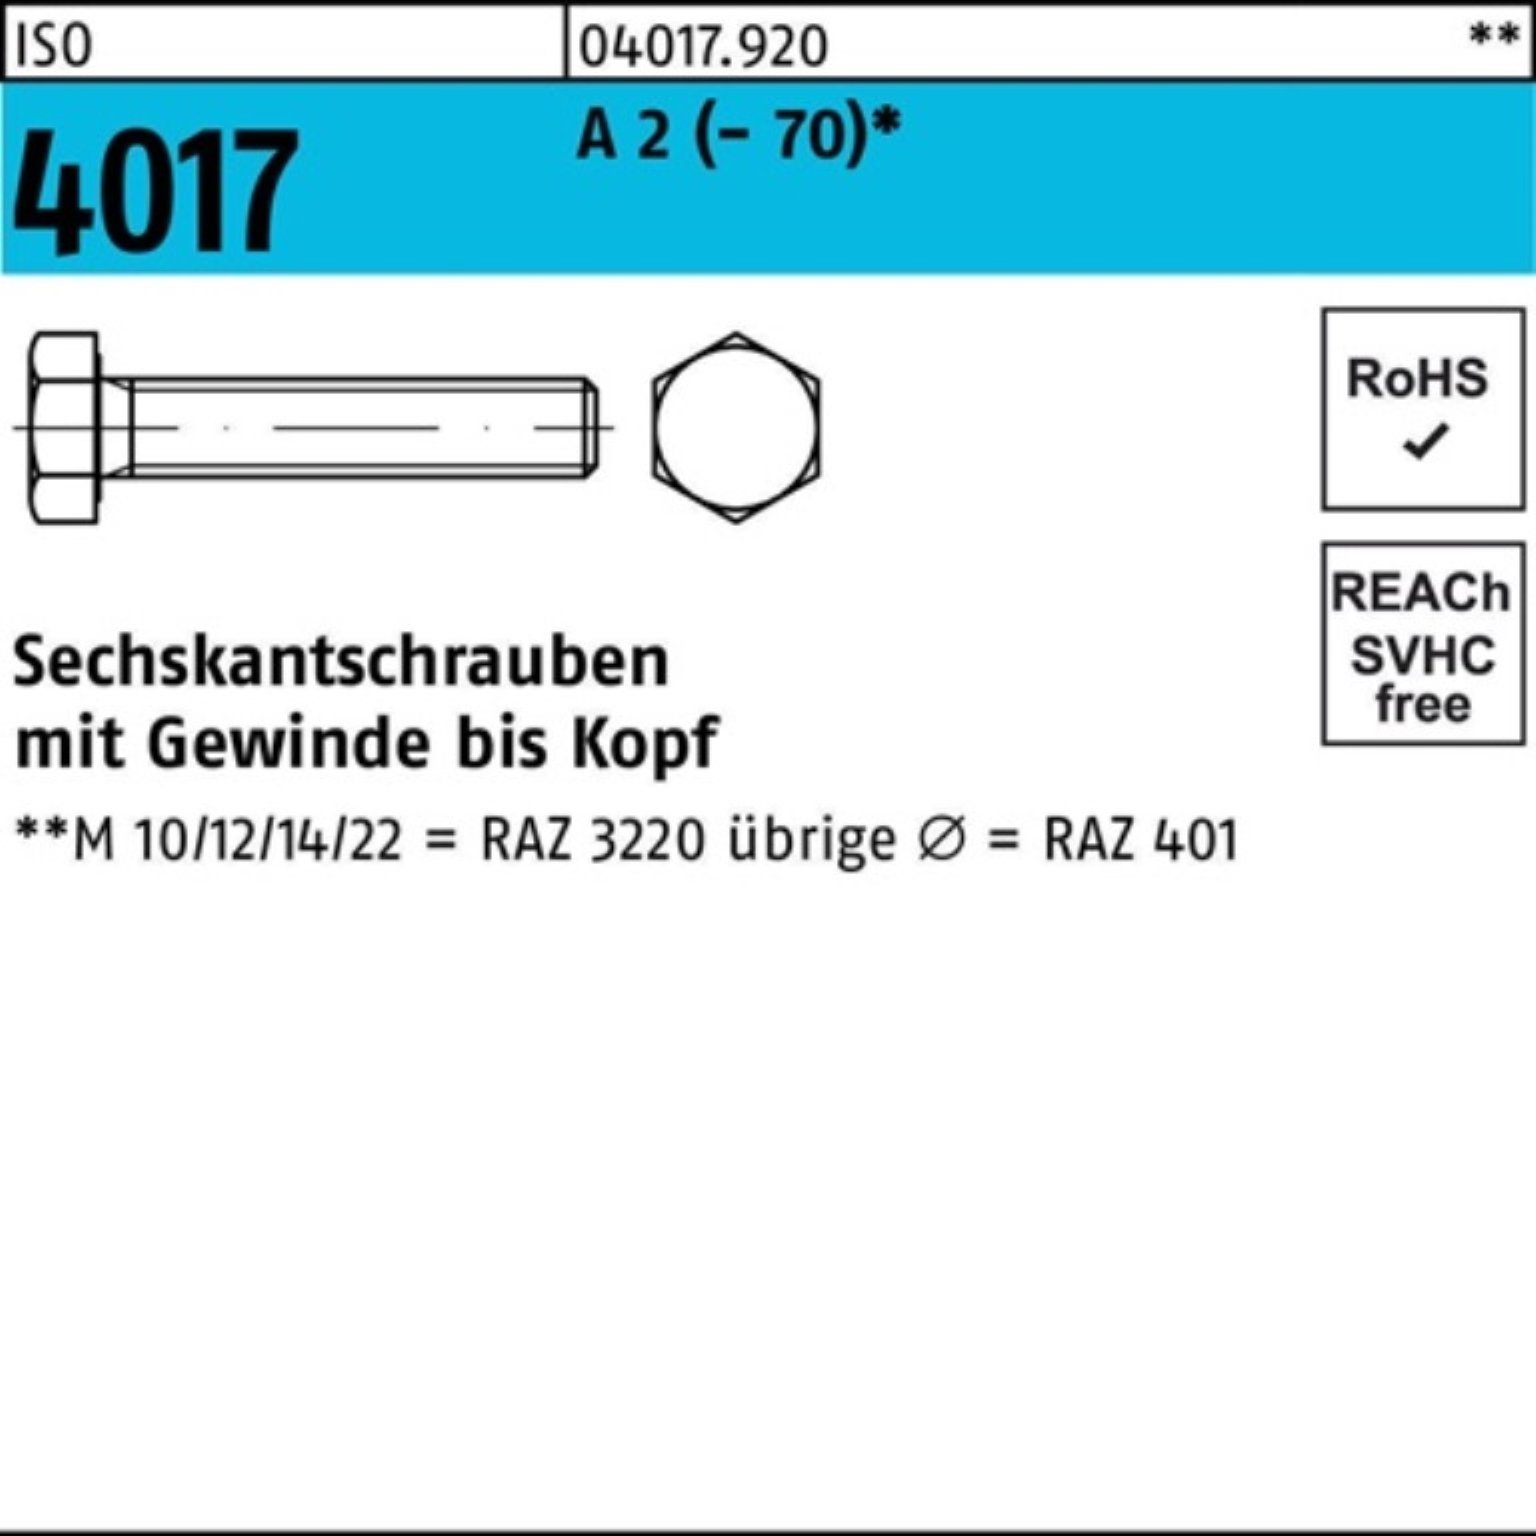 Pack 2 VG Stück 100er A Sechskantschraube M18x 4017 25 55 Bufab Sechskantschraube (70) ISO